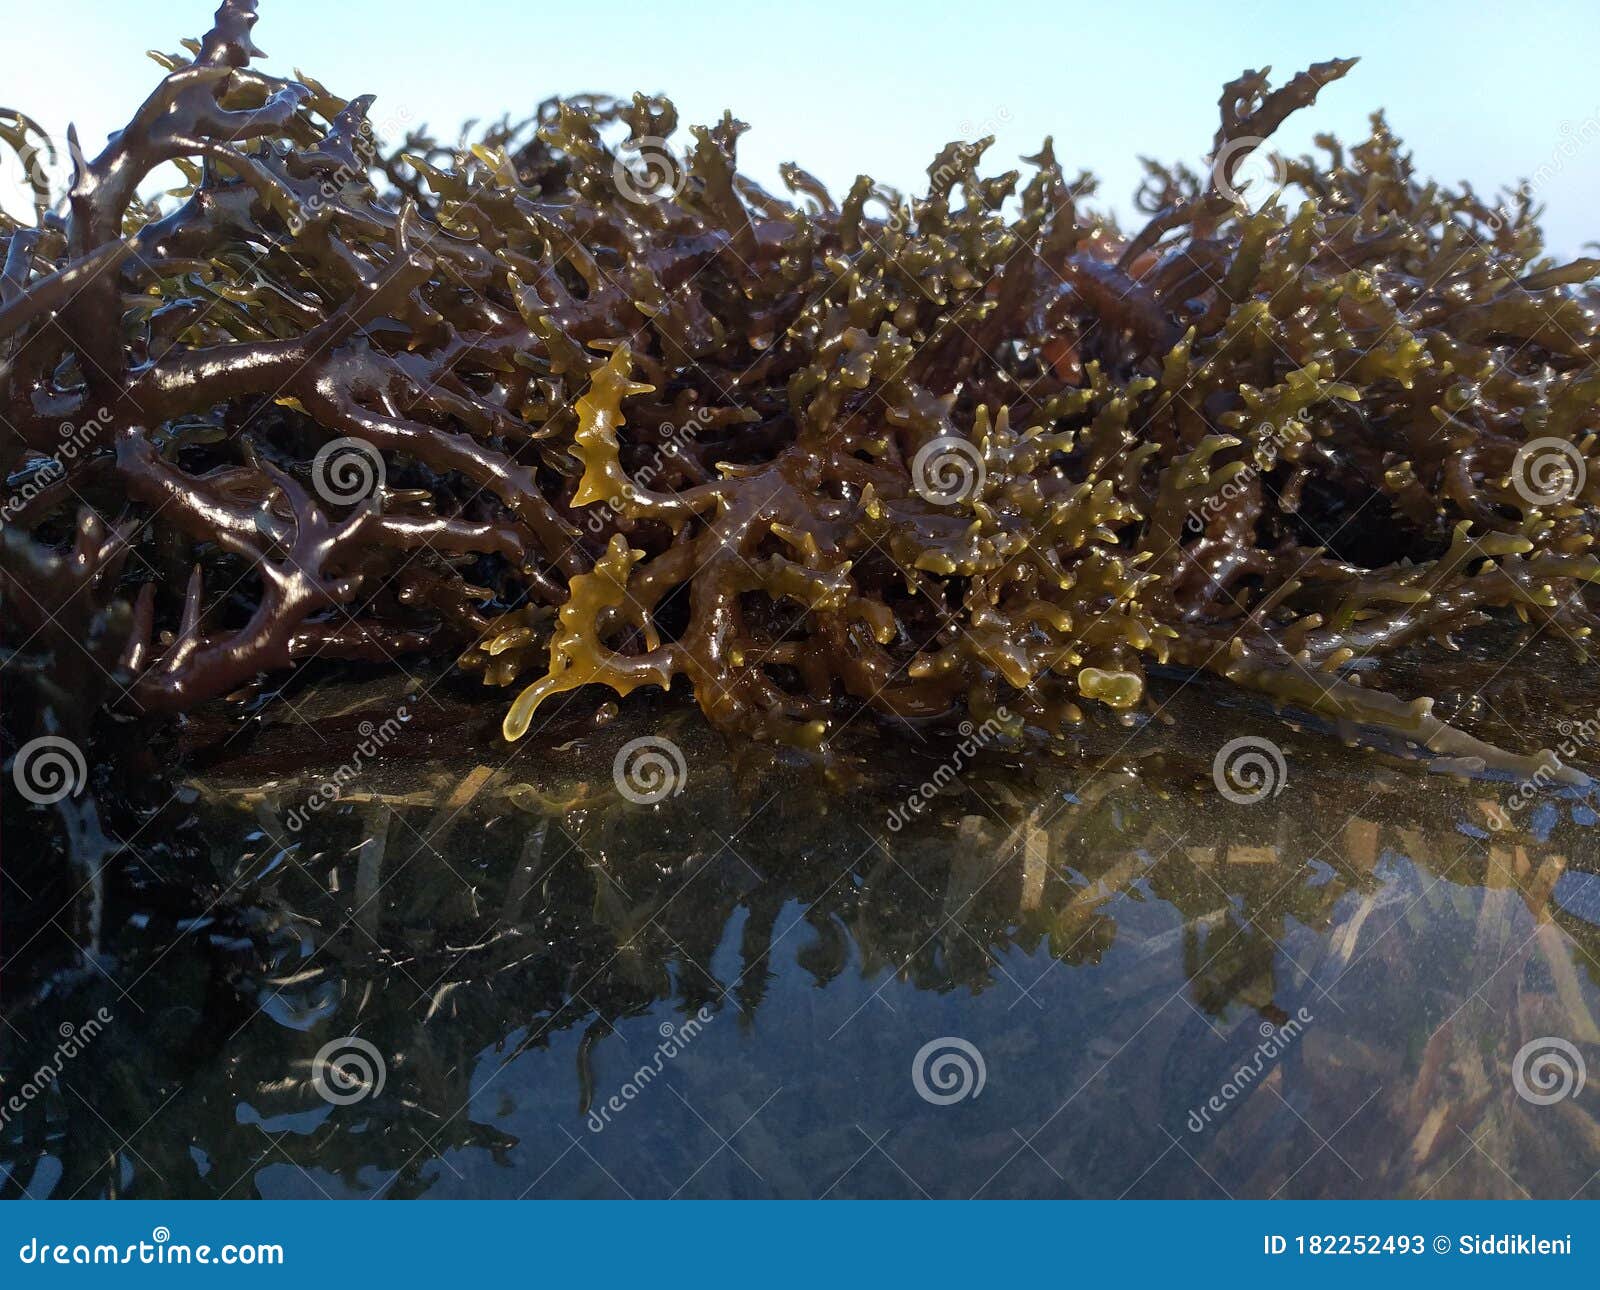 海藻肥亮片 - 伍和农业